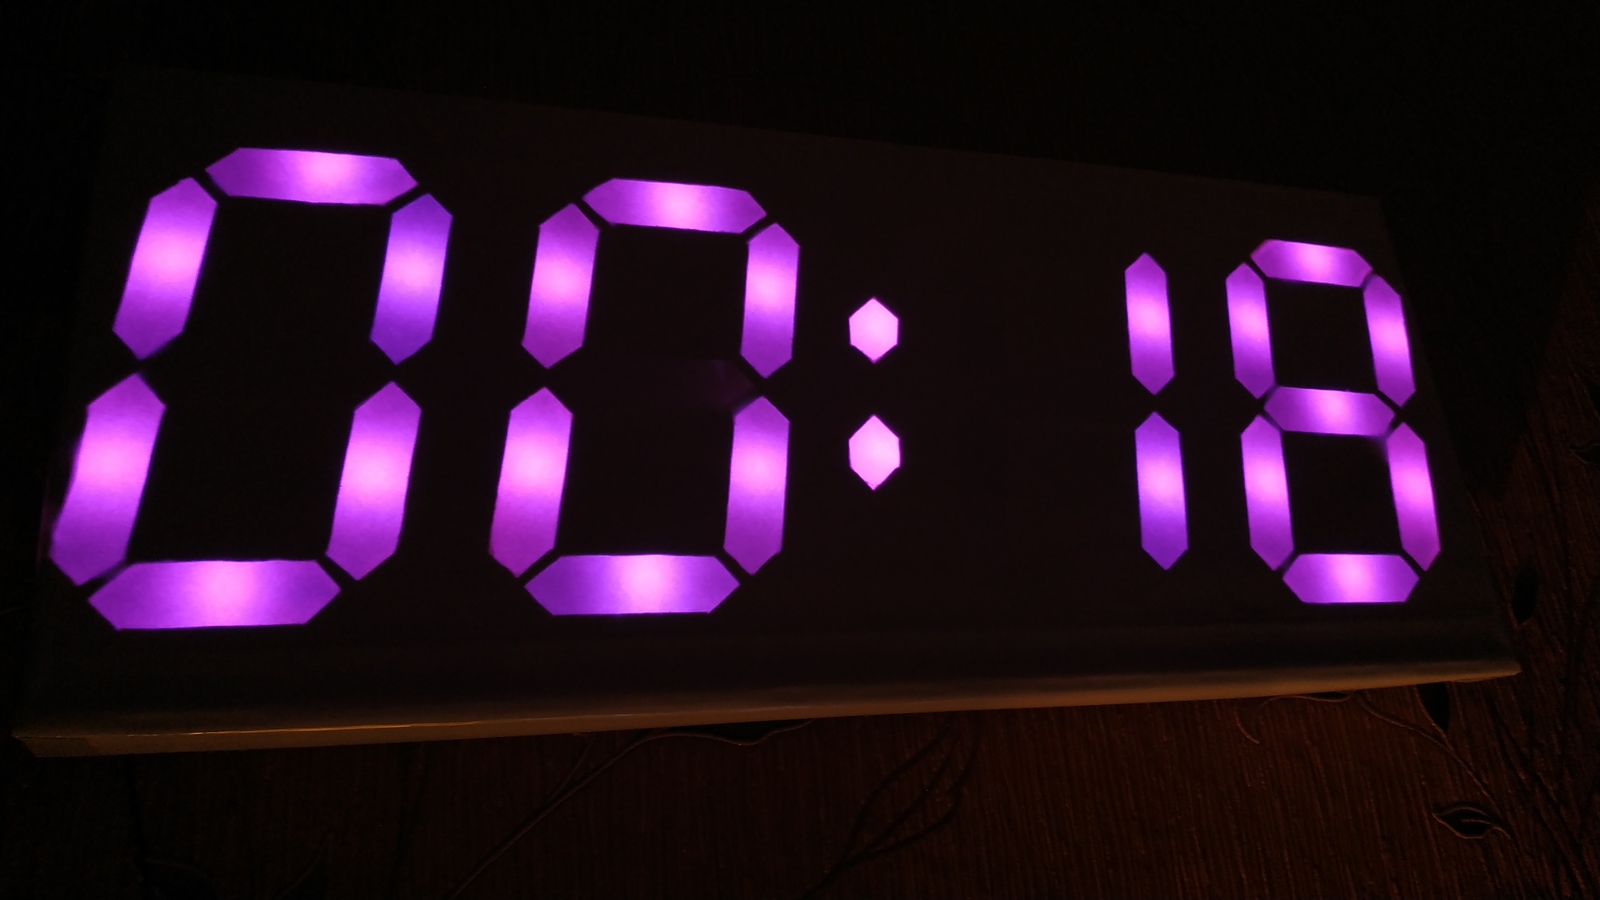 6 часов по цифрам. Часы Digital Clock 200730138828.4. Светодиодные часы на ардуино. 7 Segment Digital Clock. Часы на большом 7 сегментном led Arduino.